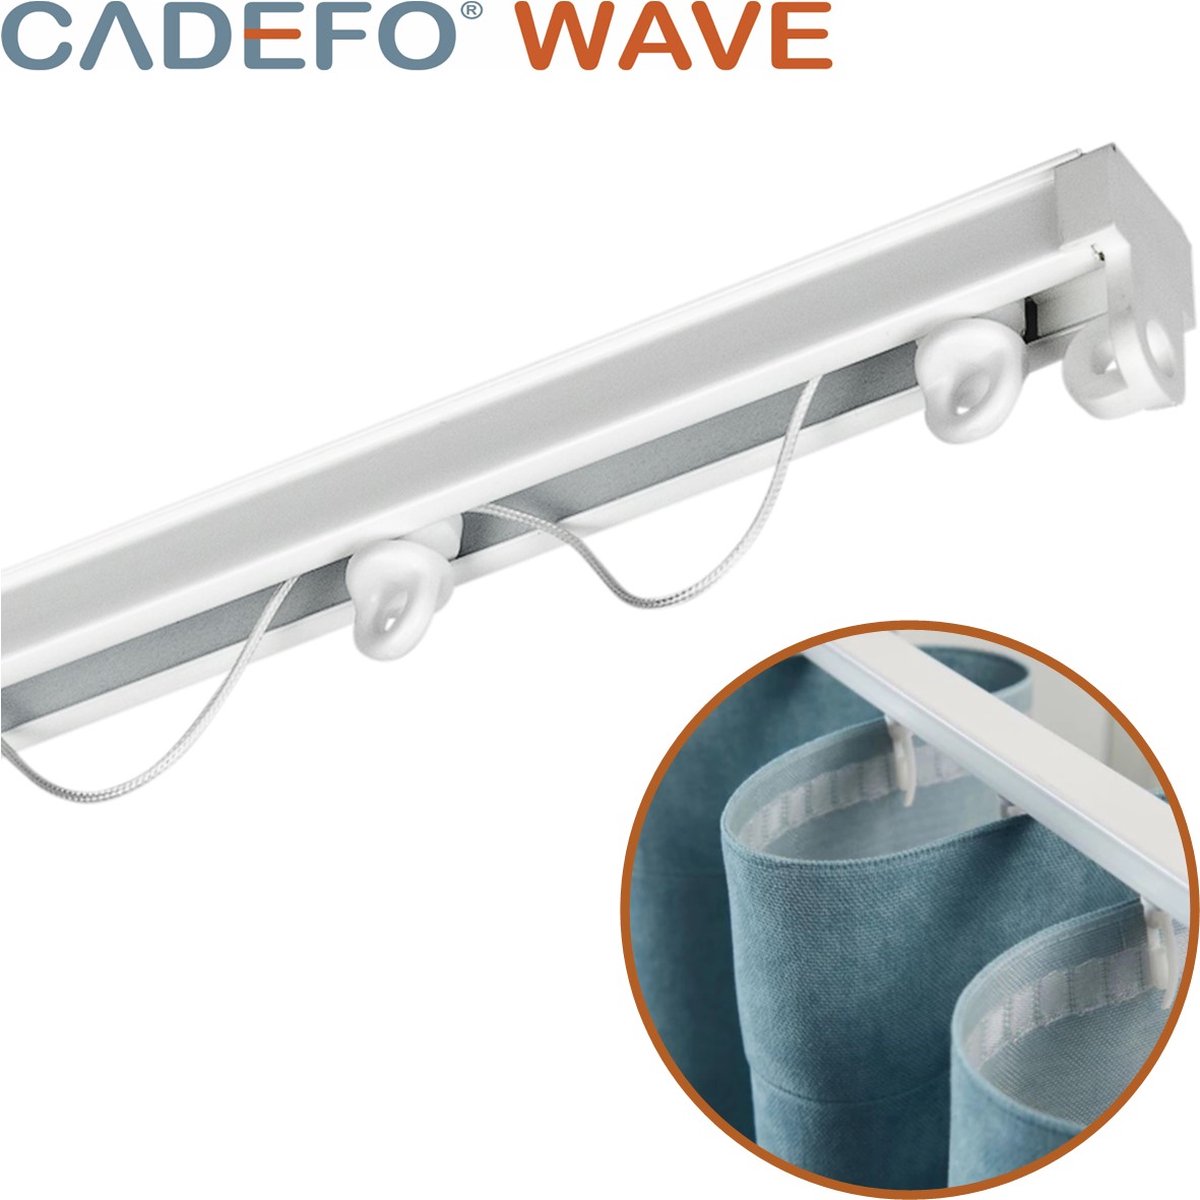 CADEFO WAVE (551 - 600 cm) Gordijnrails - Compleet op maat! - UIT 1 STUK - Leverbaar tot 6 meter - Plafondbevestiging - Lengte 600 cm - 6 meter